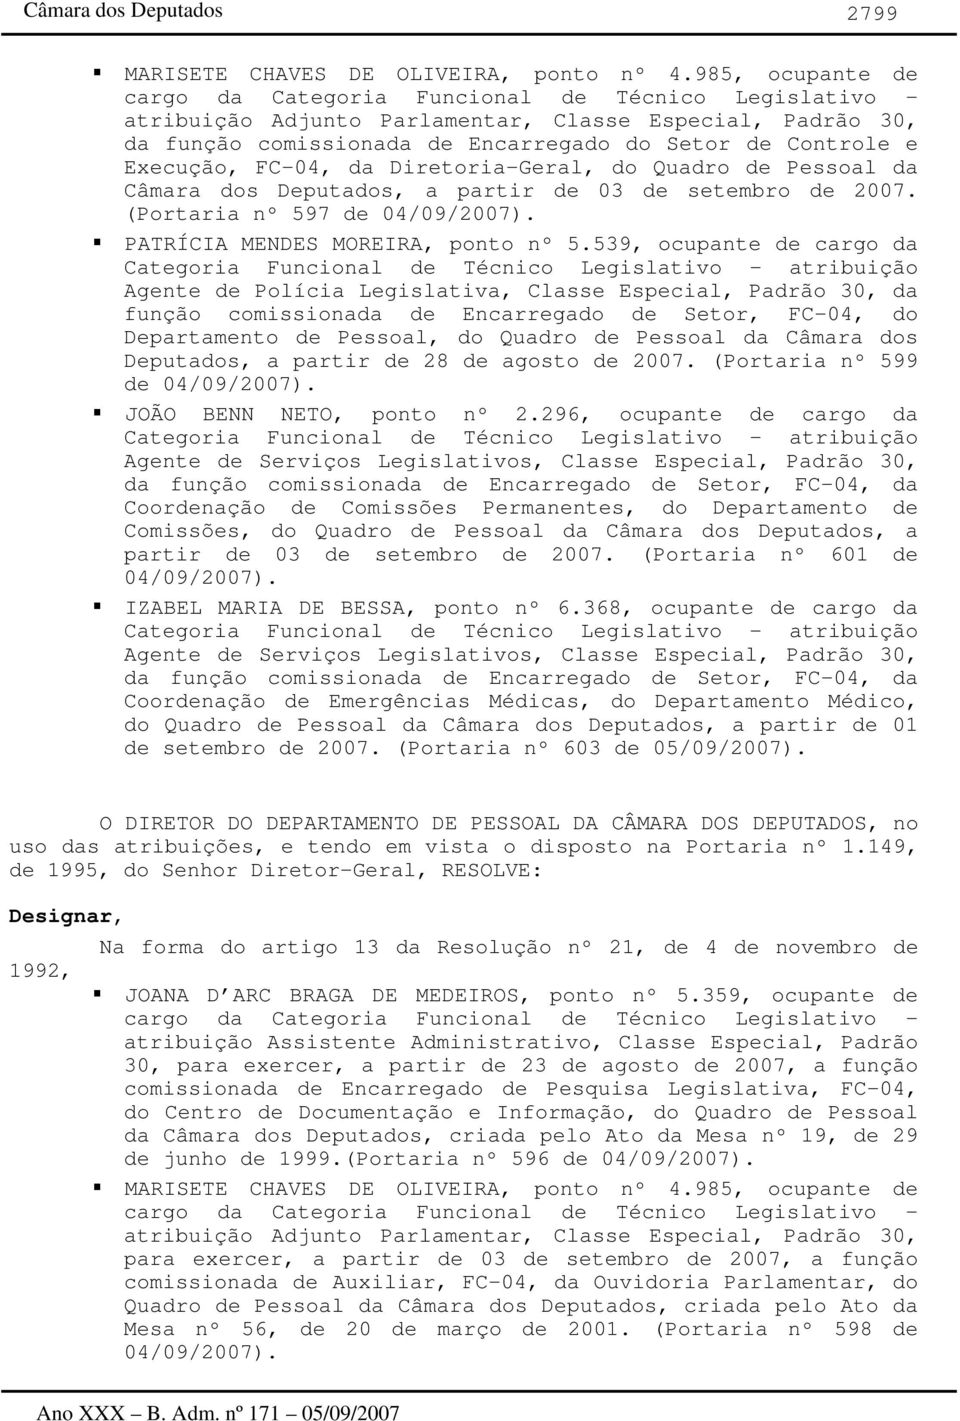 Execução, FC-04, da Diretoria-Geral, do Quadro de Pessoal da Câmara dos Deputados, a partir de 03 de setembro de 2007. (Portaria nº 597 de 04/09/2007). PATRÍCIA MENDES MOREIRA, nº 5.